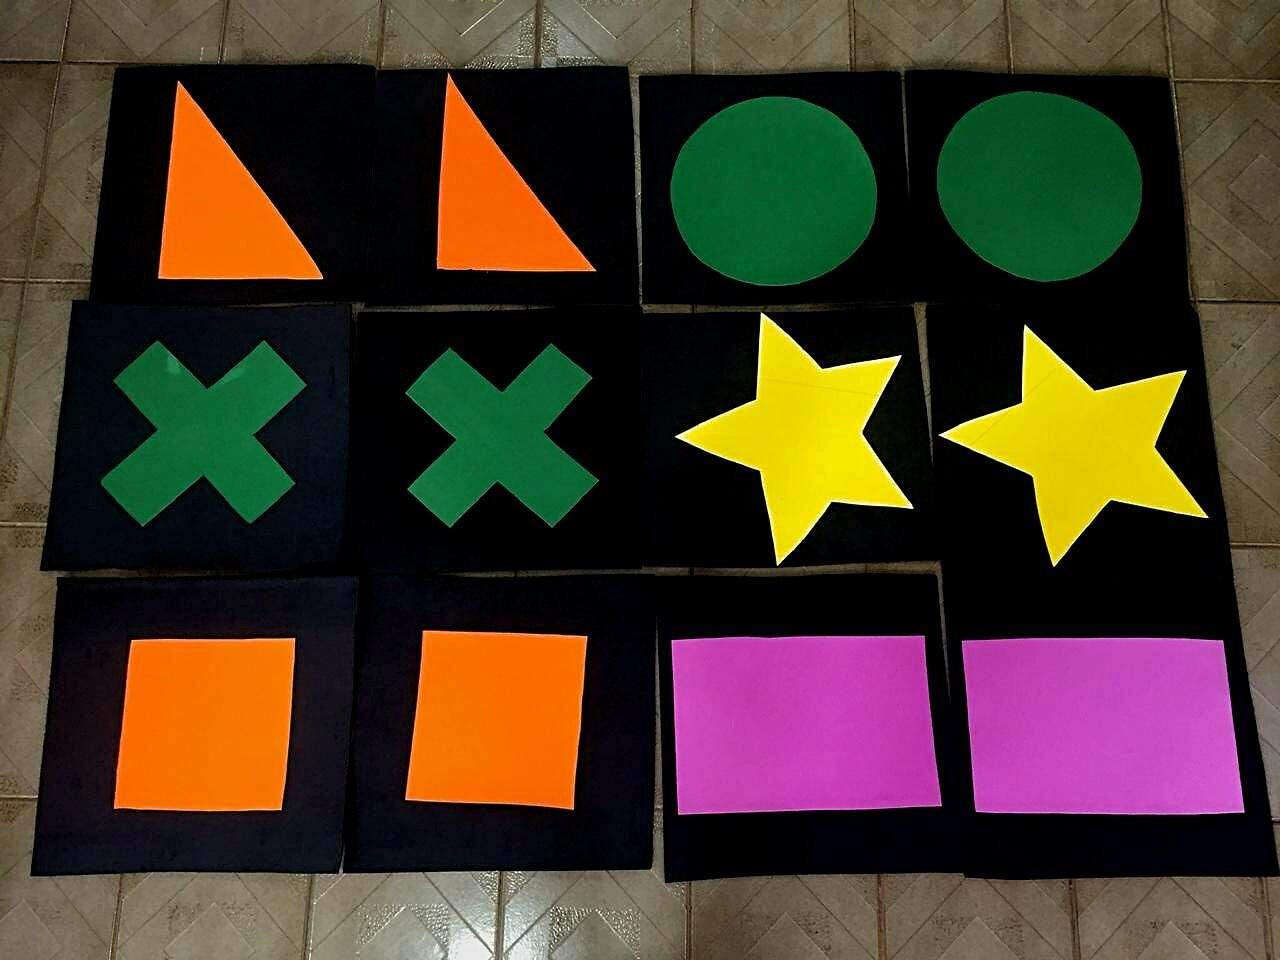 Usando formas e cores, professora cria jogos para estimular crianças -  Diversão - Campo Grande News